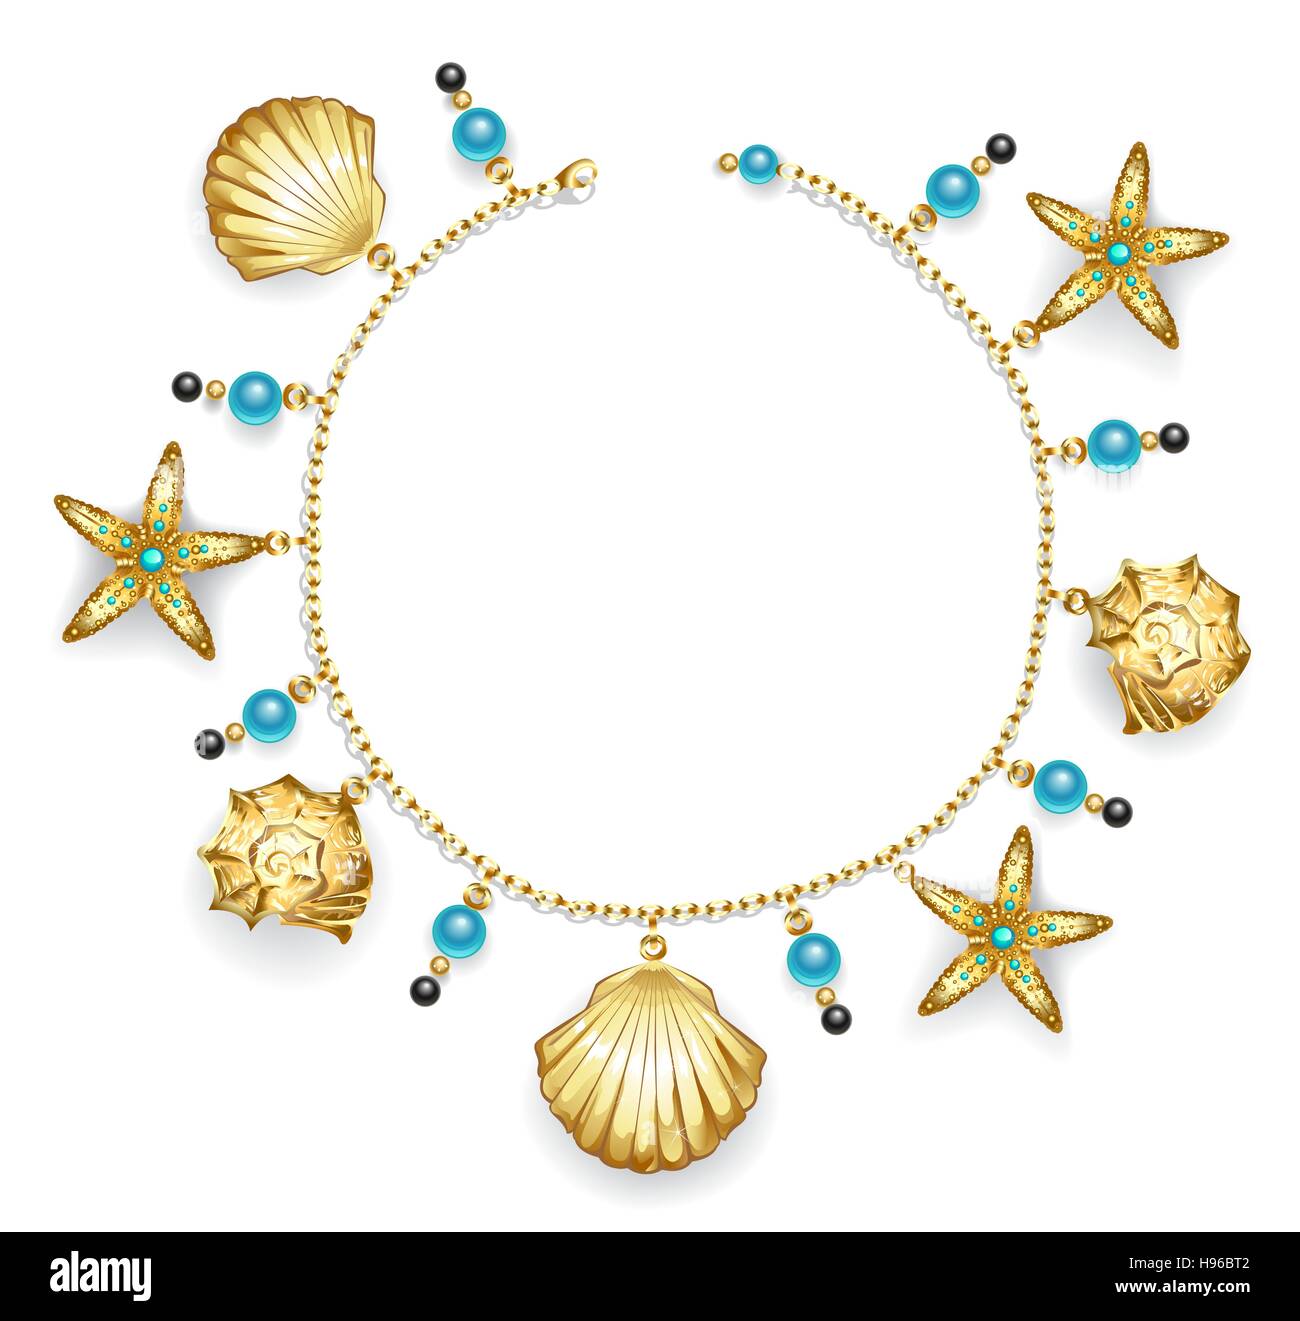 Erstellen Sie ein Armband gold Kette mit goldenen Muscheln, Seesterne und Türkis Perlen verziert. Stock Vektor